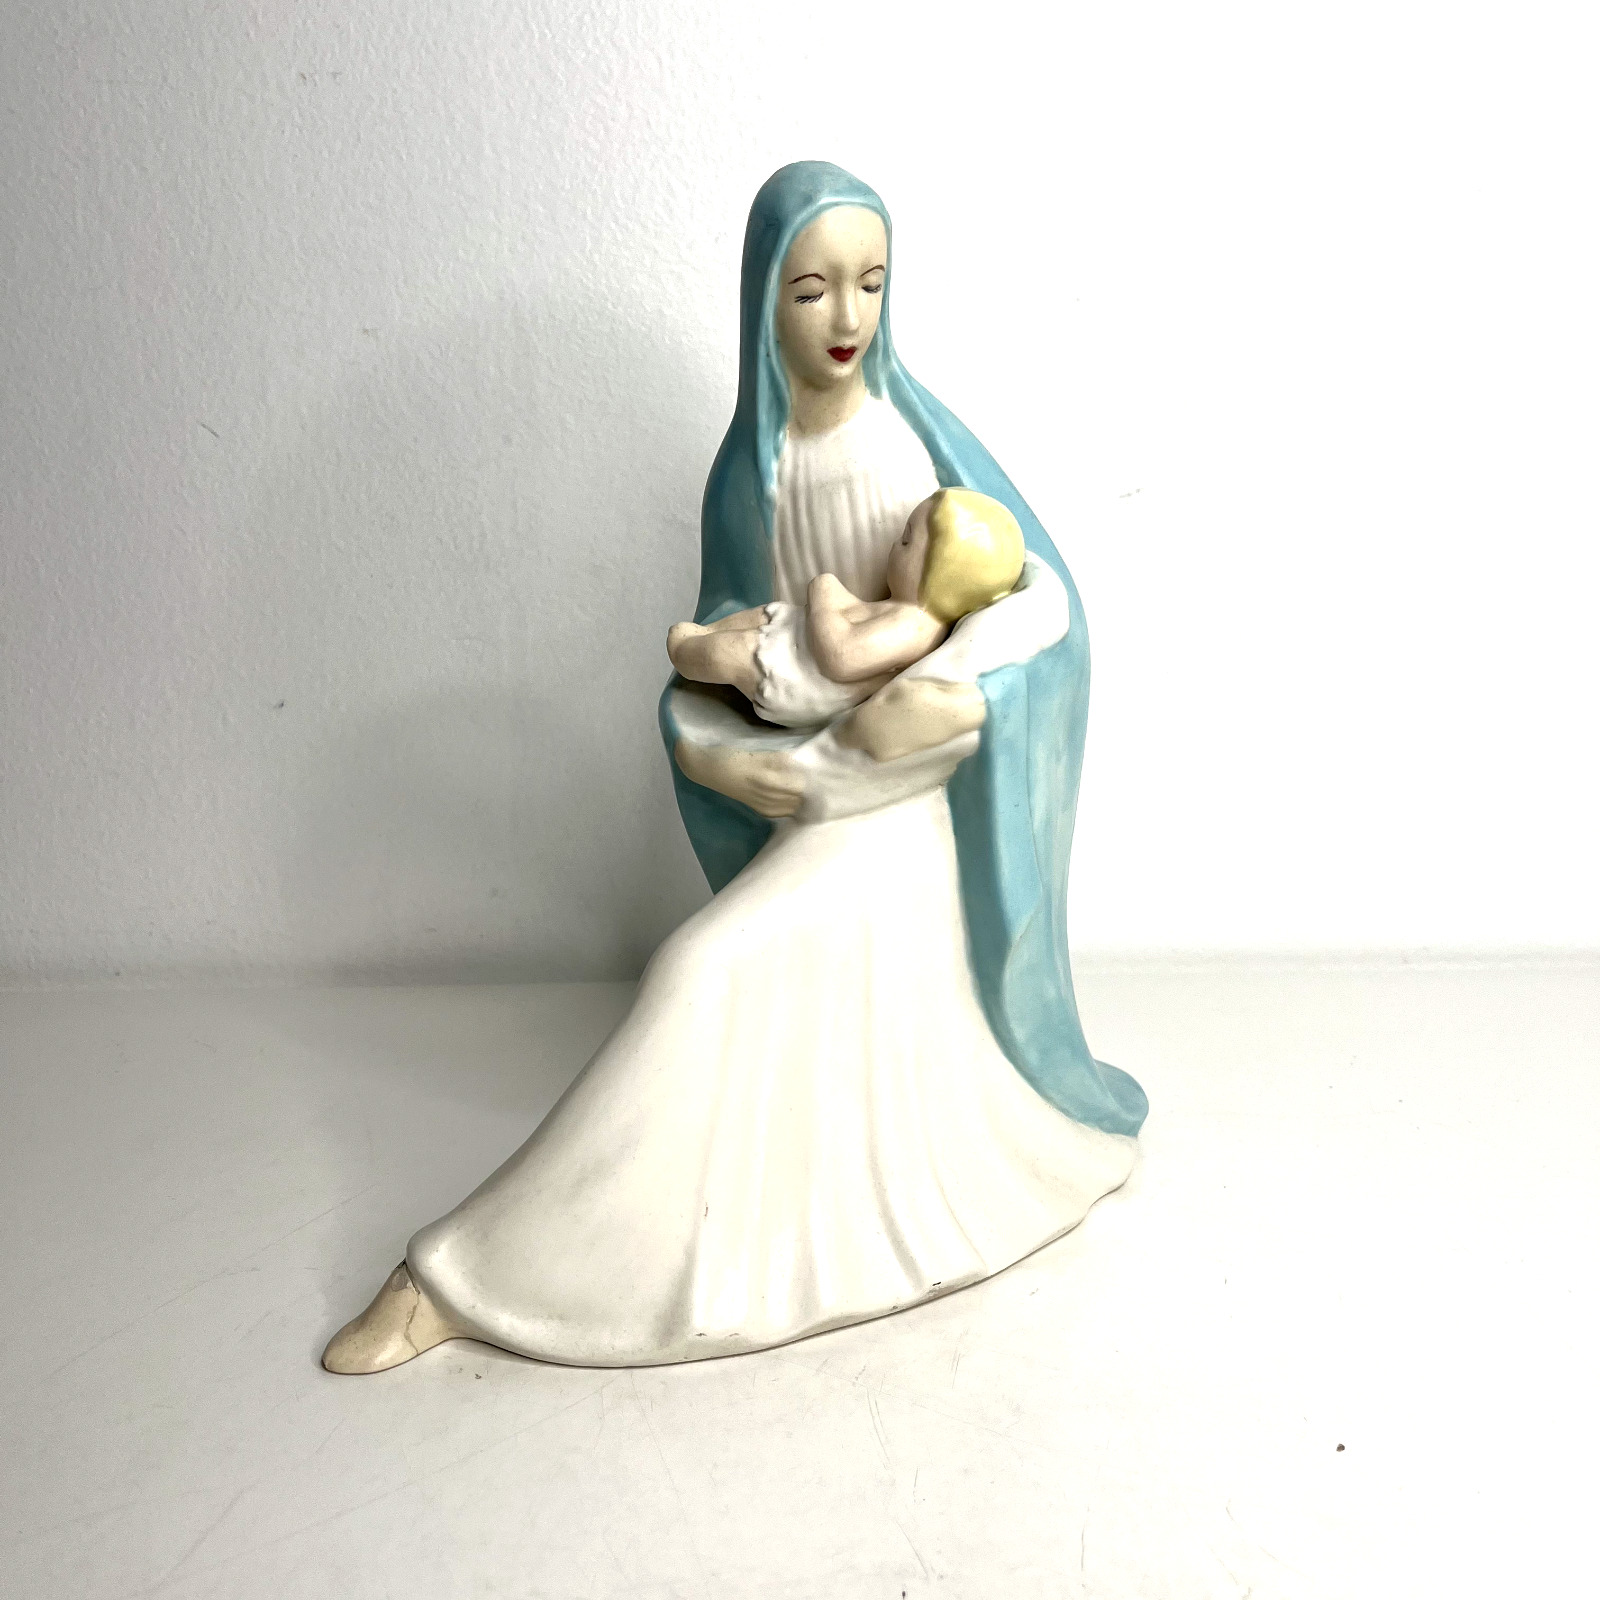 Vintage Porcelain Figurine of Madonna Mother and Child 1959 Holland Mold Signed